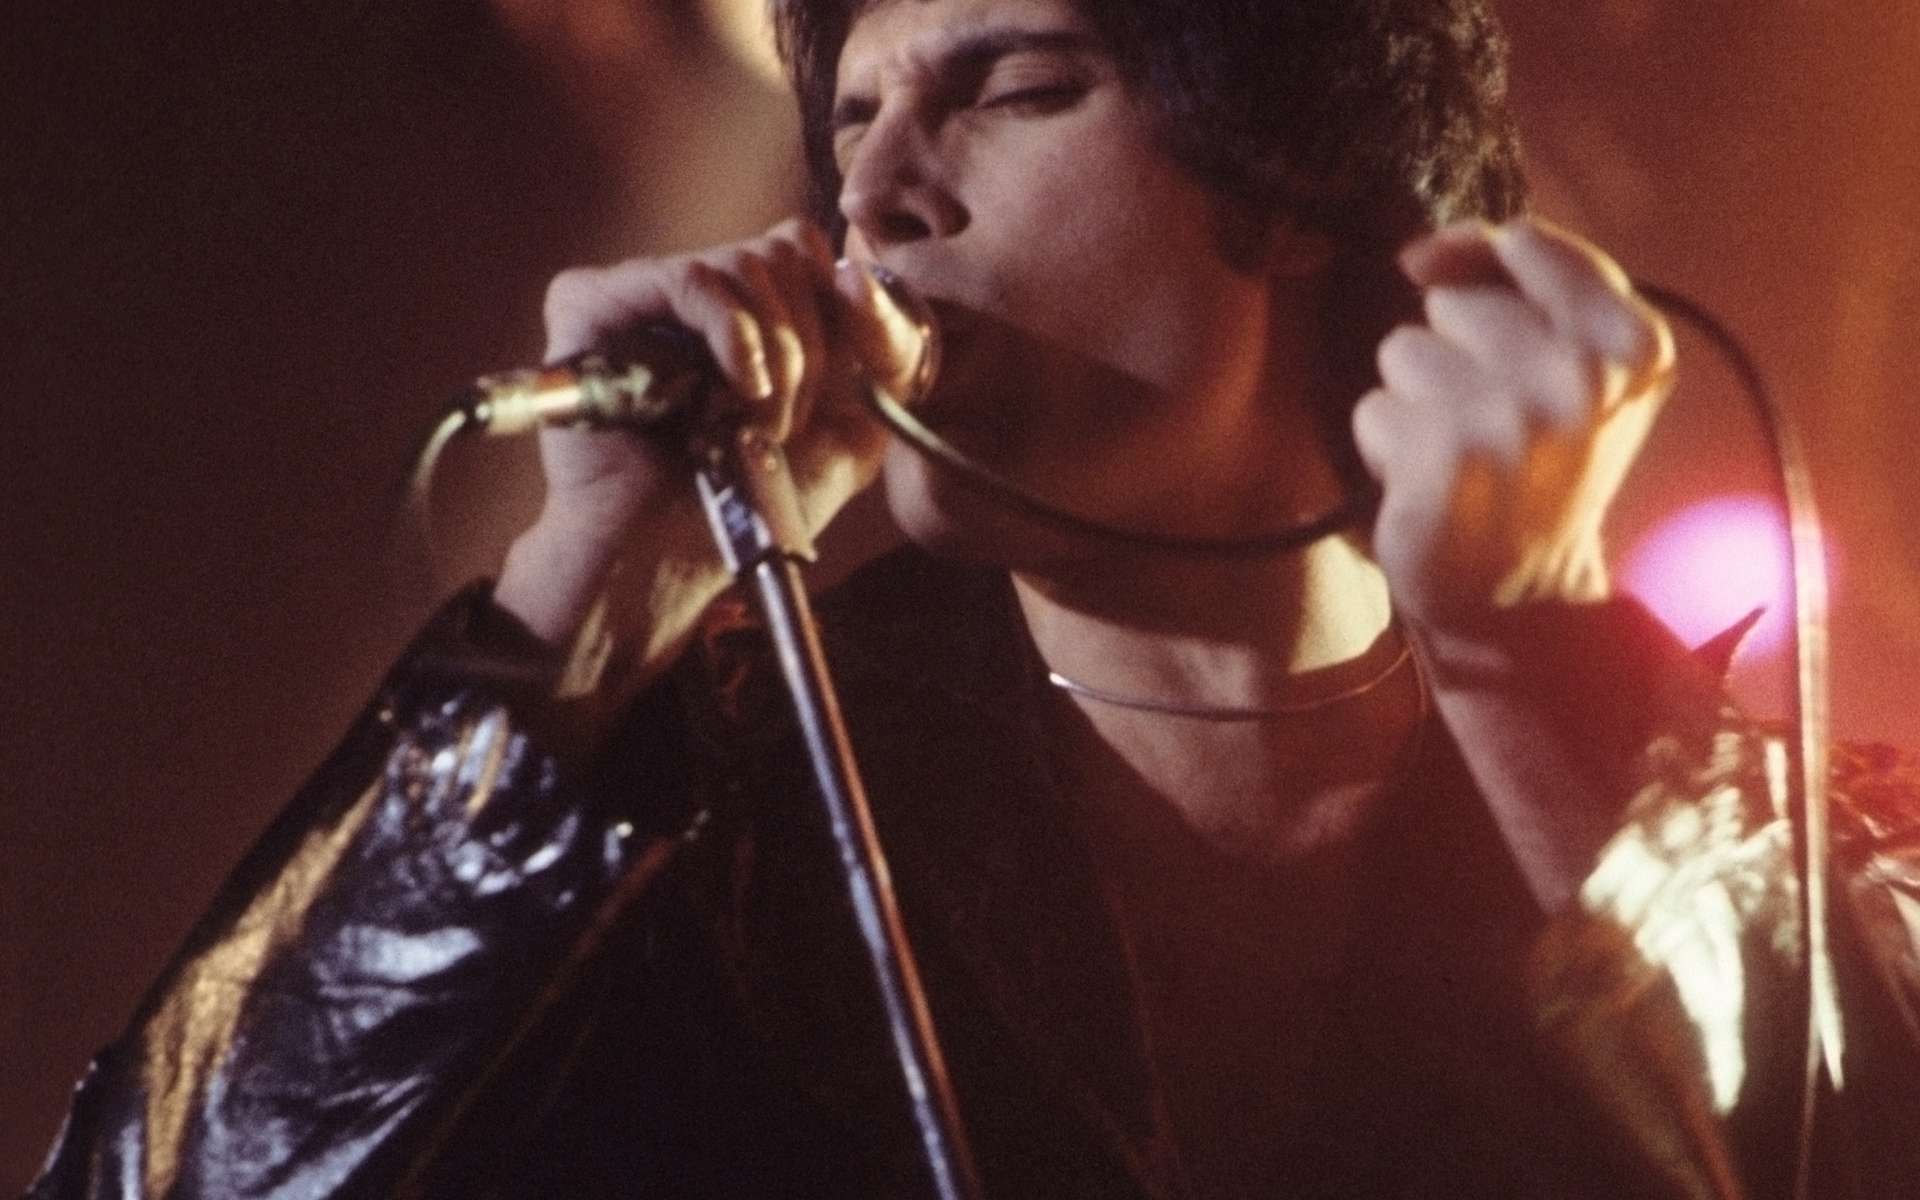 Freddie Mercury avait une voix exceptionnelle, passant rapidement du grave à l’aigu. © Karl Lender, Wikimedia Commons, CC by-sa 3.0